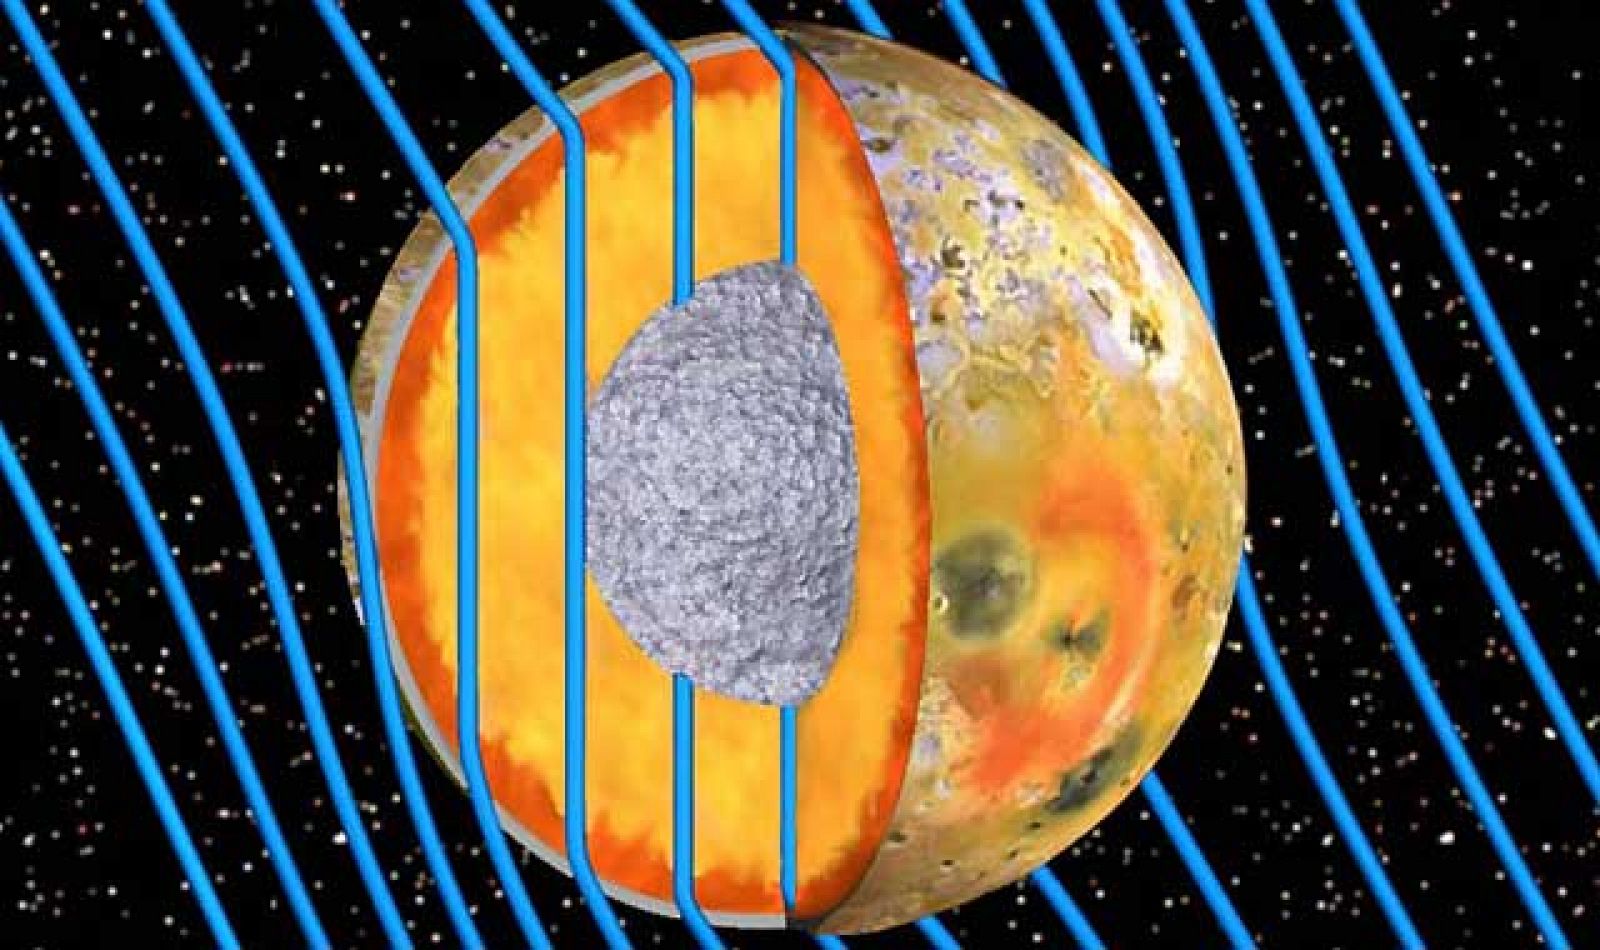  Es el cuerpo más activo volcánicamente del sistema solar, pero un nuevo análisis fortalece la teoría de que además Io, la luna de Júpiter, tiene un océano de magma en su interior.Así los señalan los datos recogidos por la sonda de la nasa Galileo y 